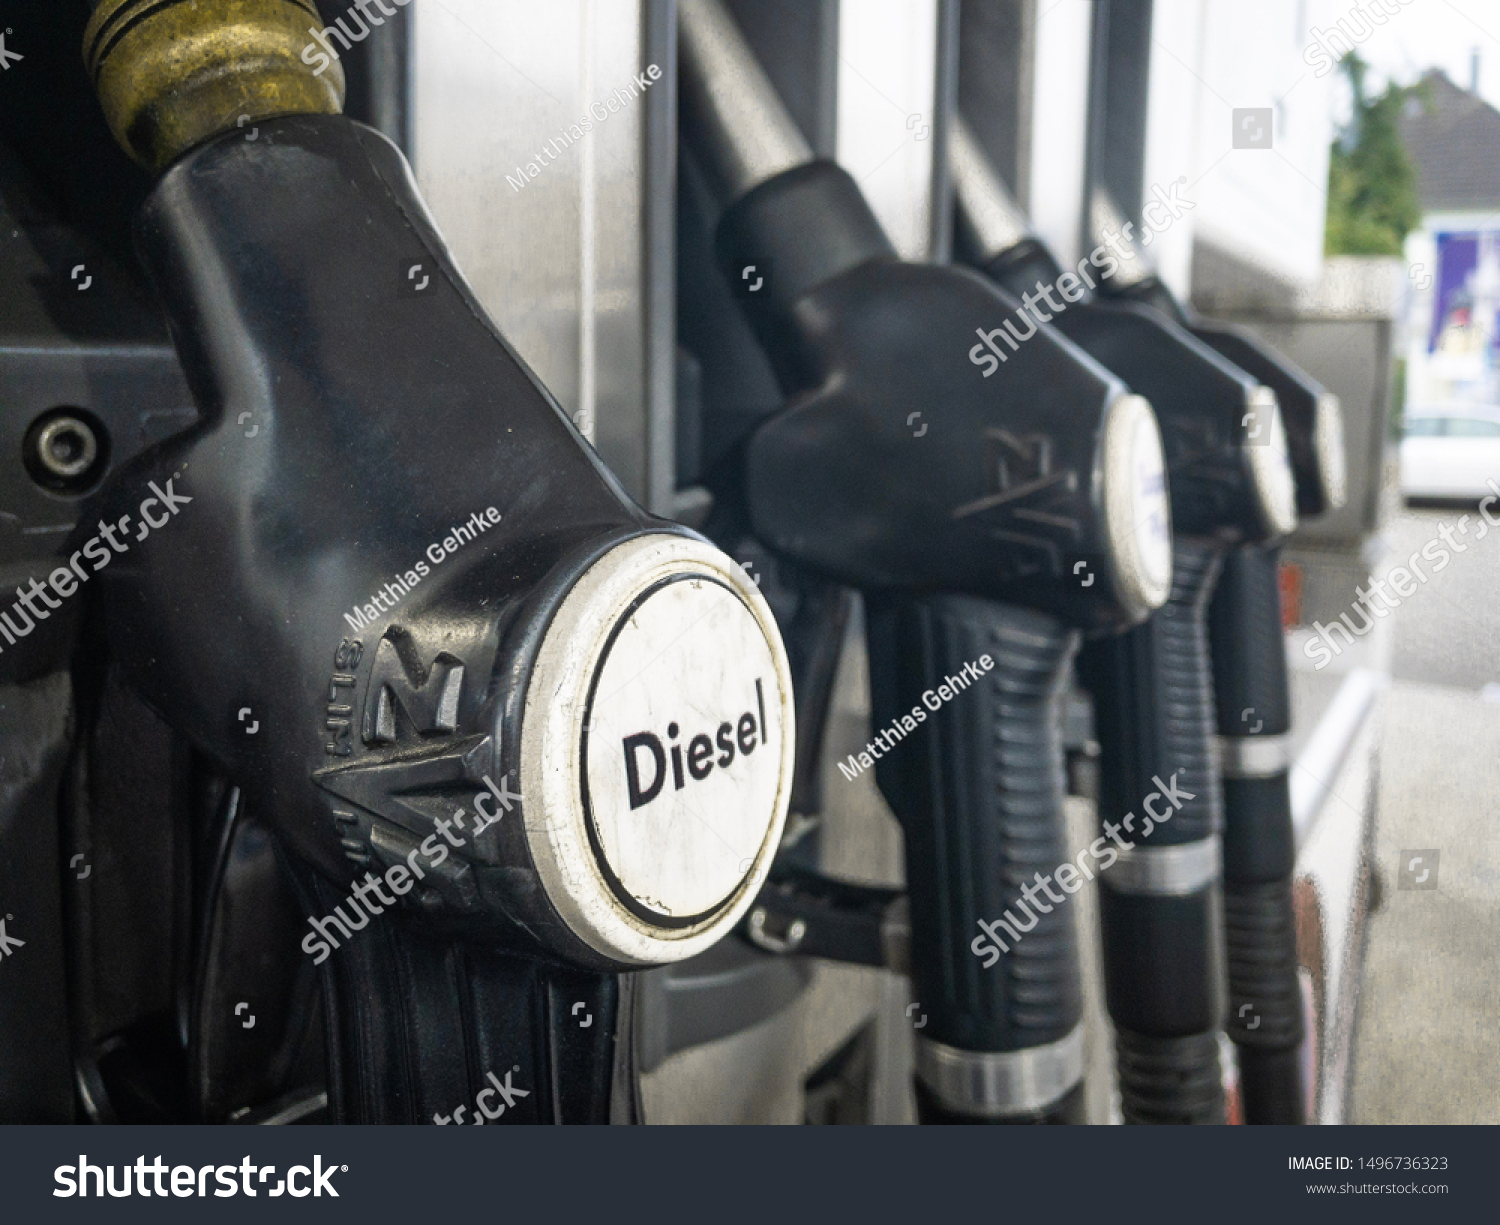 Paderborn, Deutschland - 01.09.2019: Gas pump on a gas station #1496736323